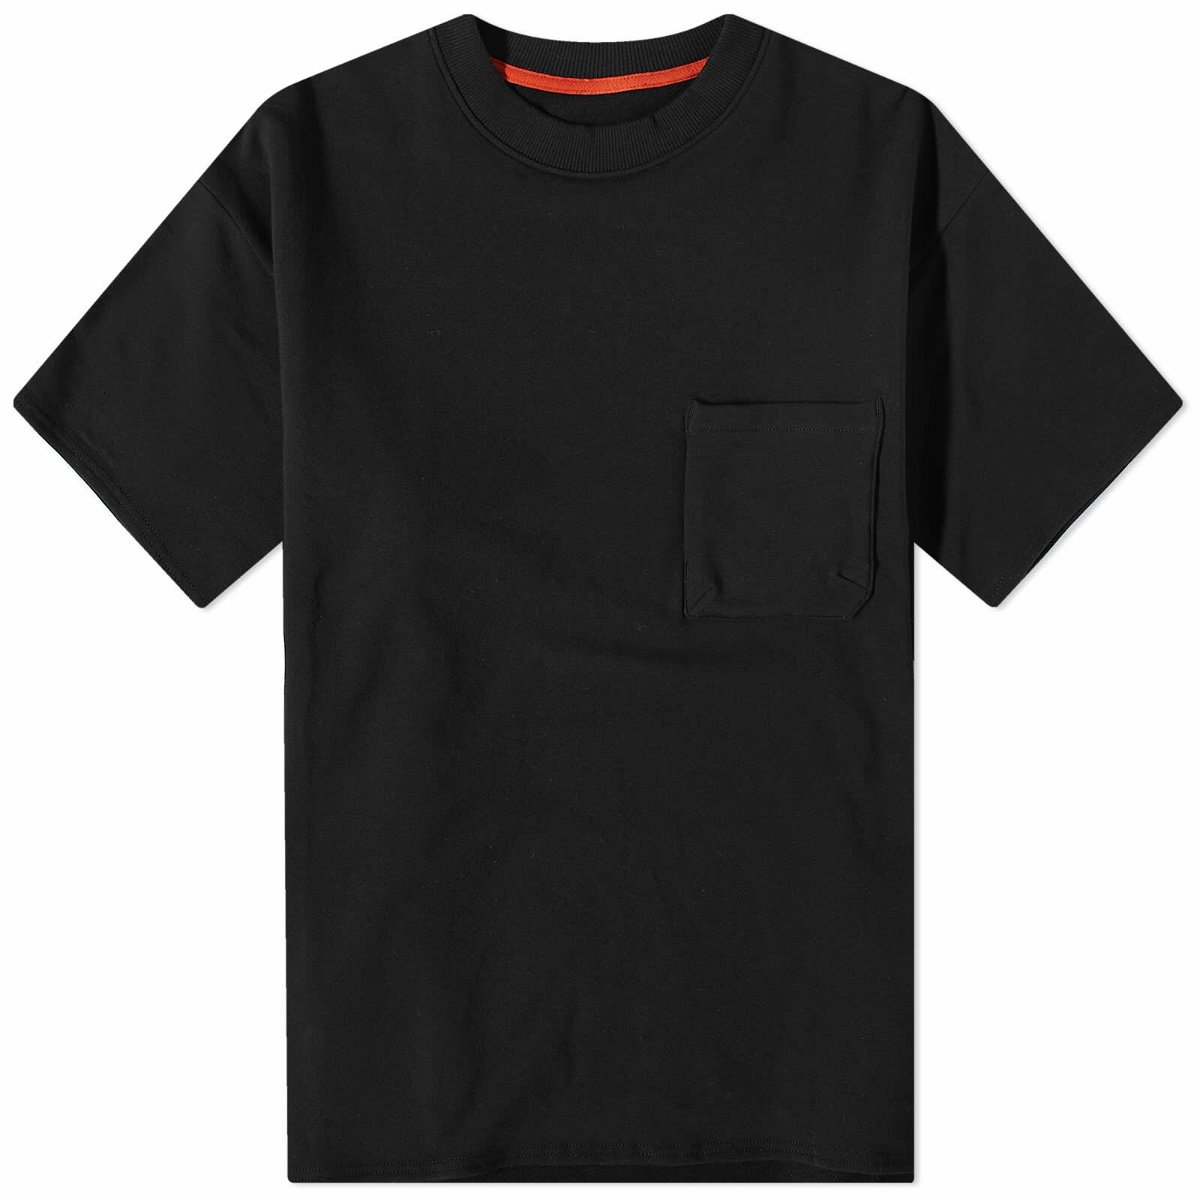 GOOPiMADE “TYPE-X” 3D Pocket T-Shirt - White